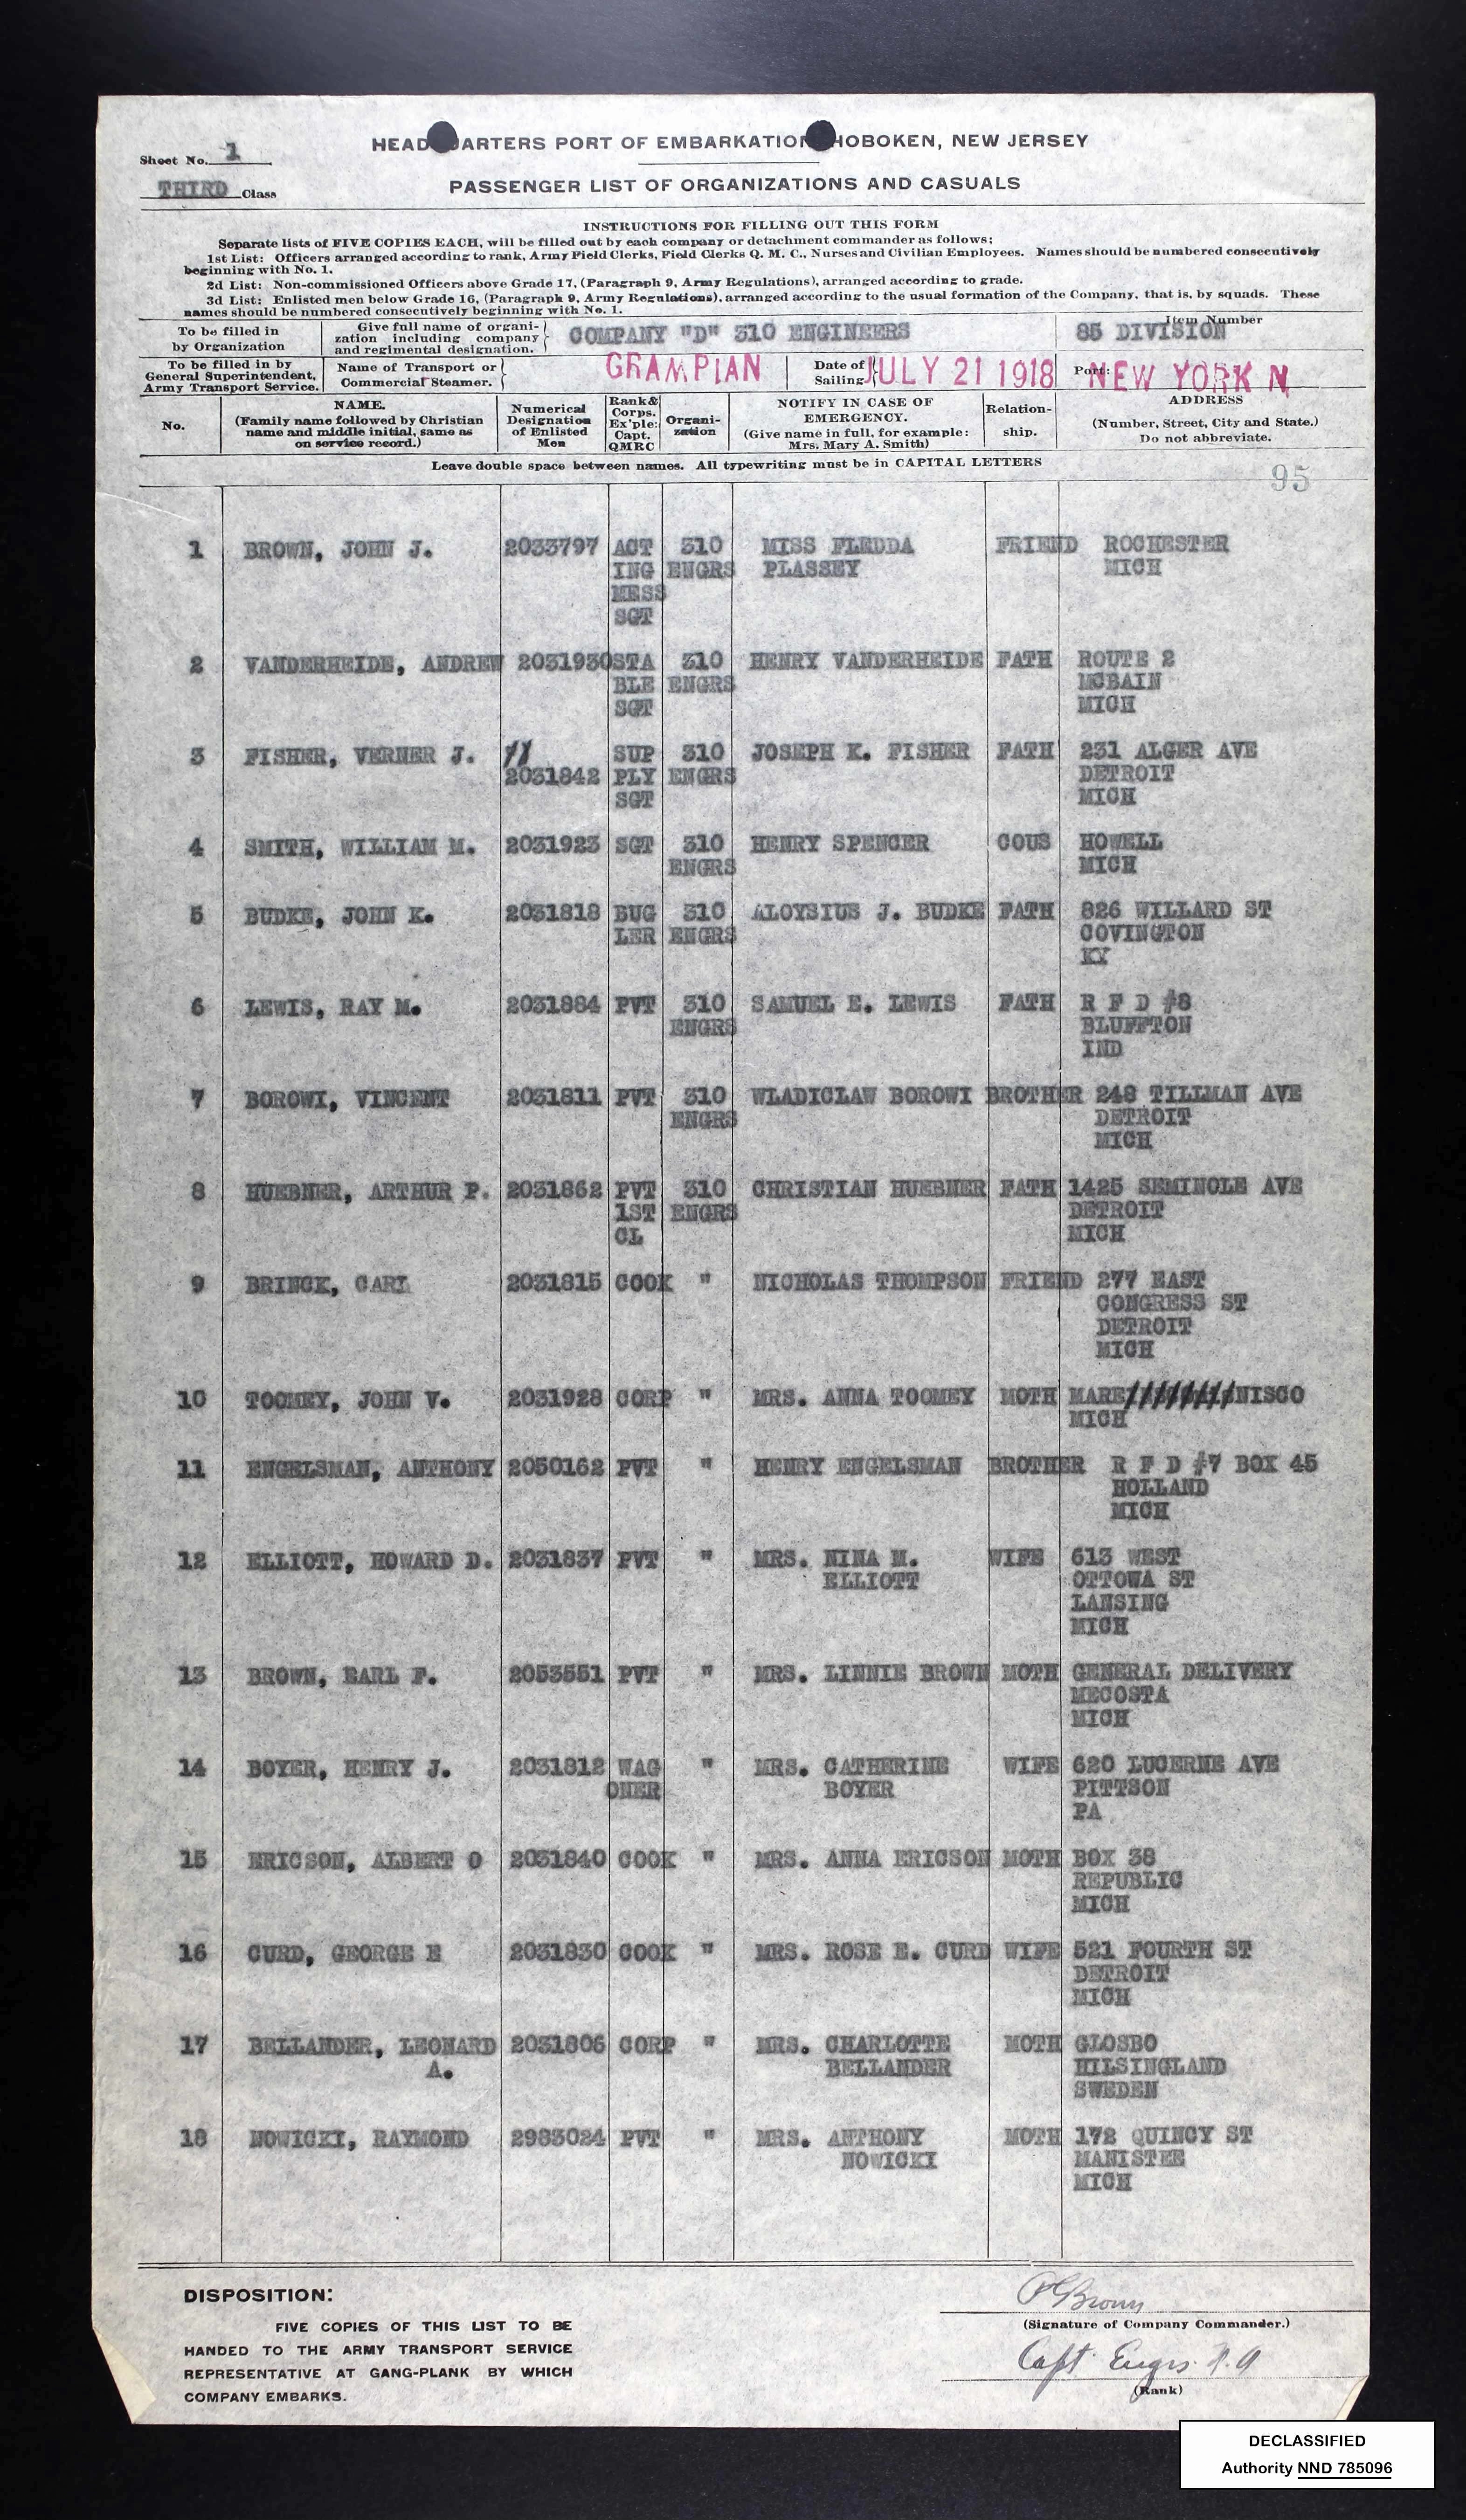 SS Grampian Passenger's List